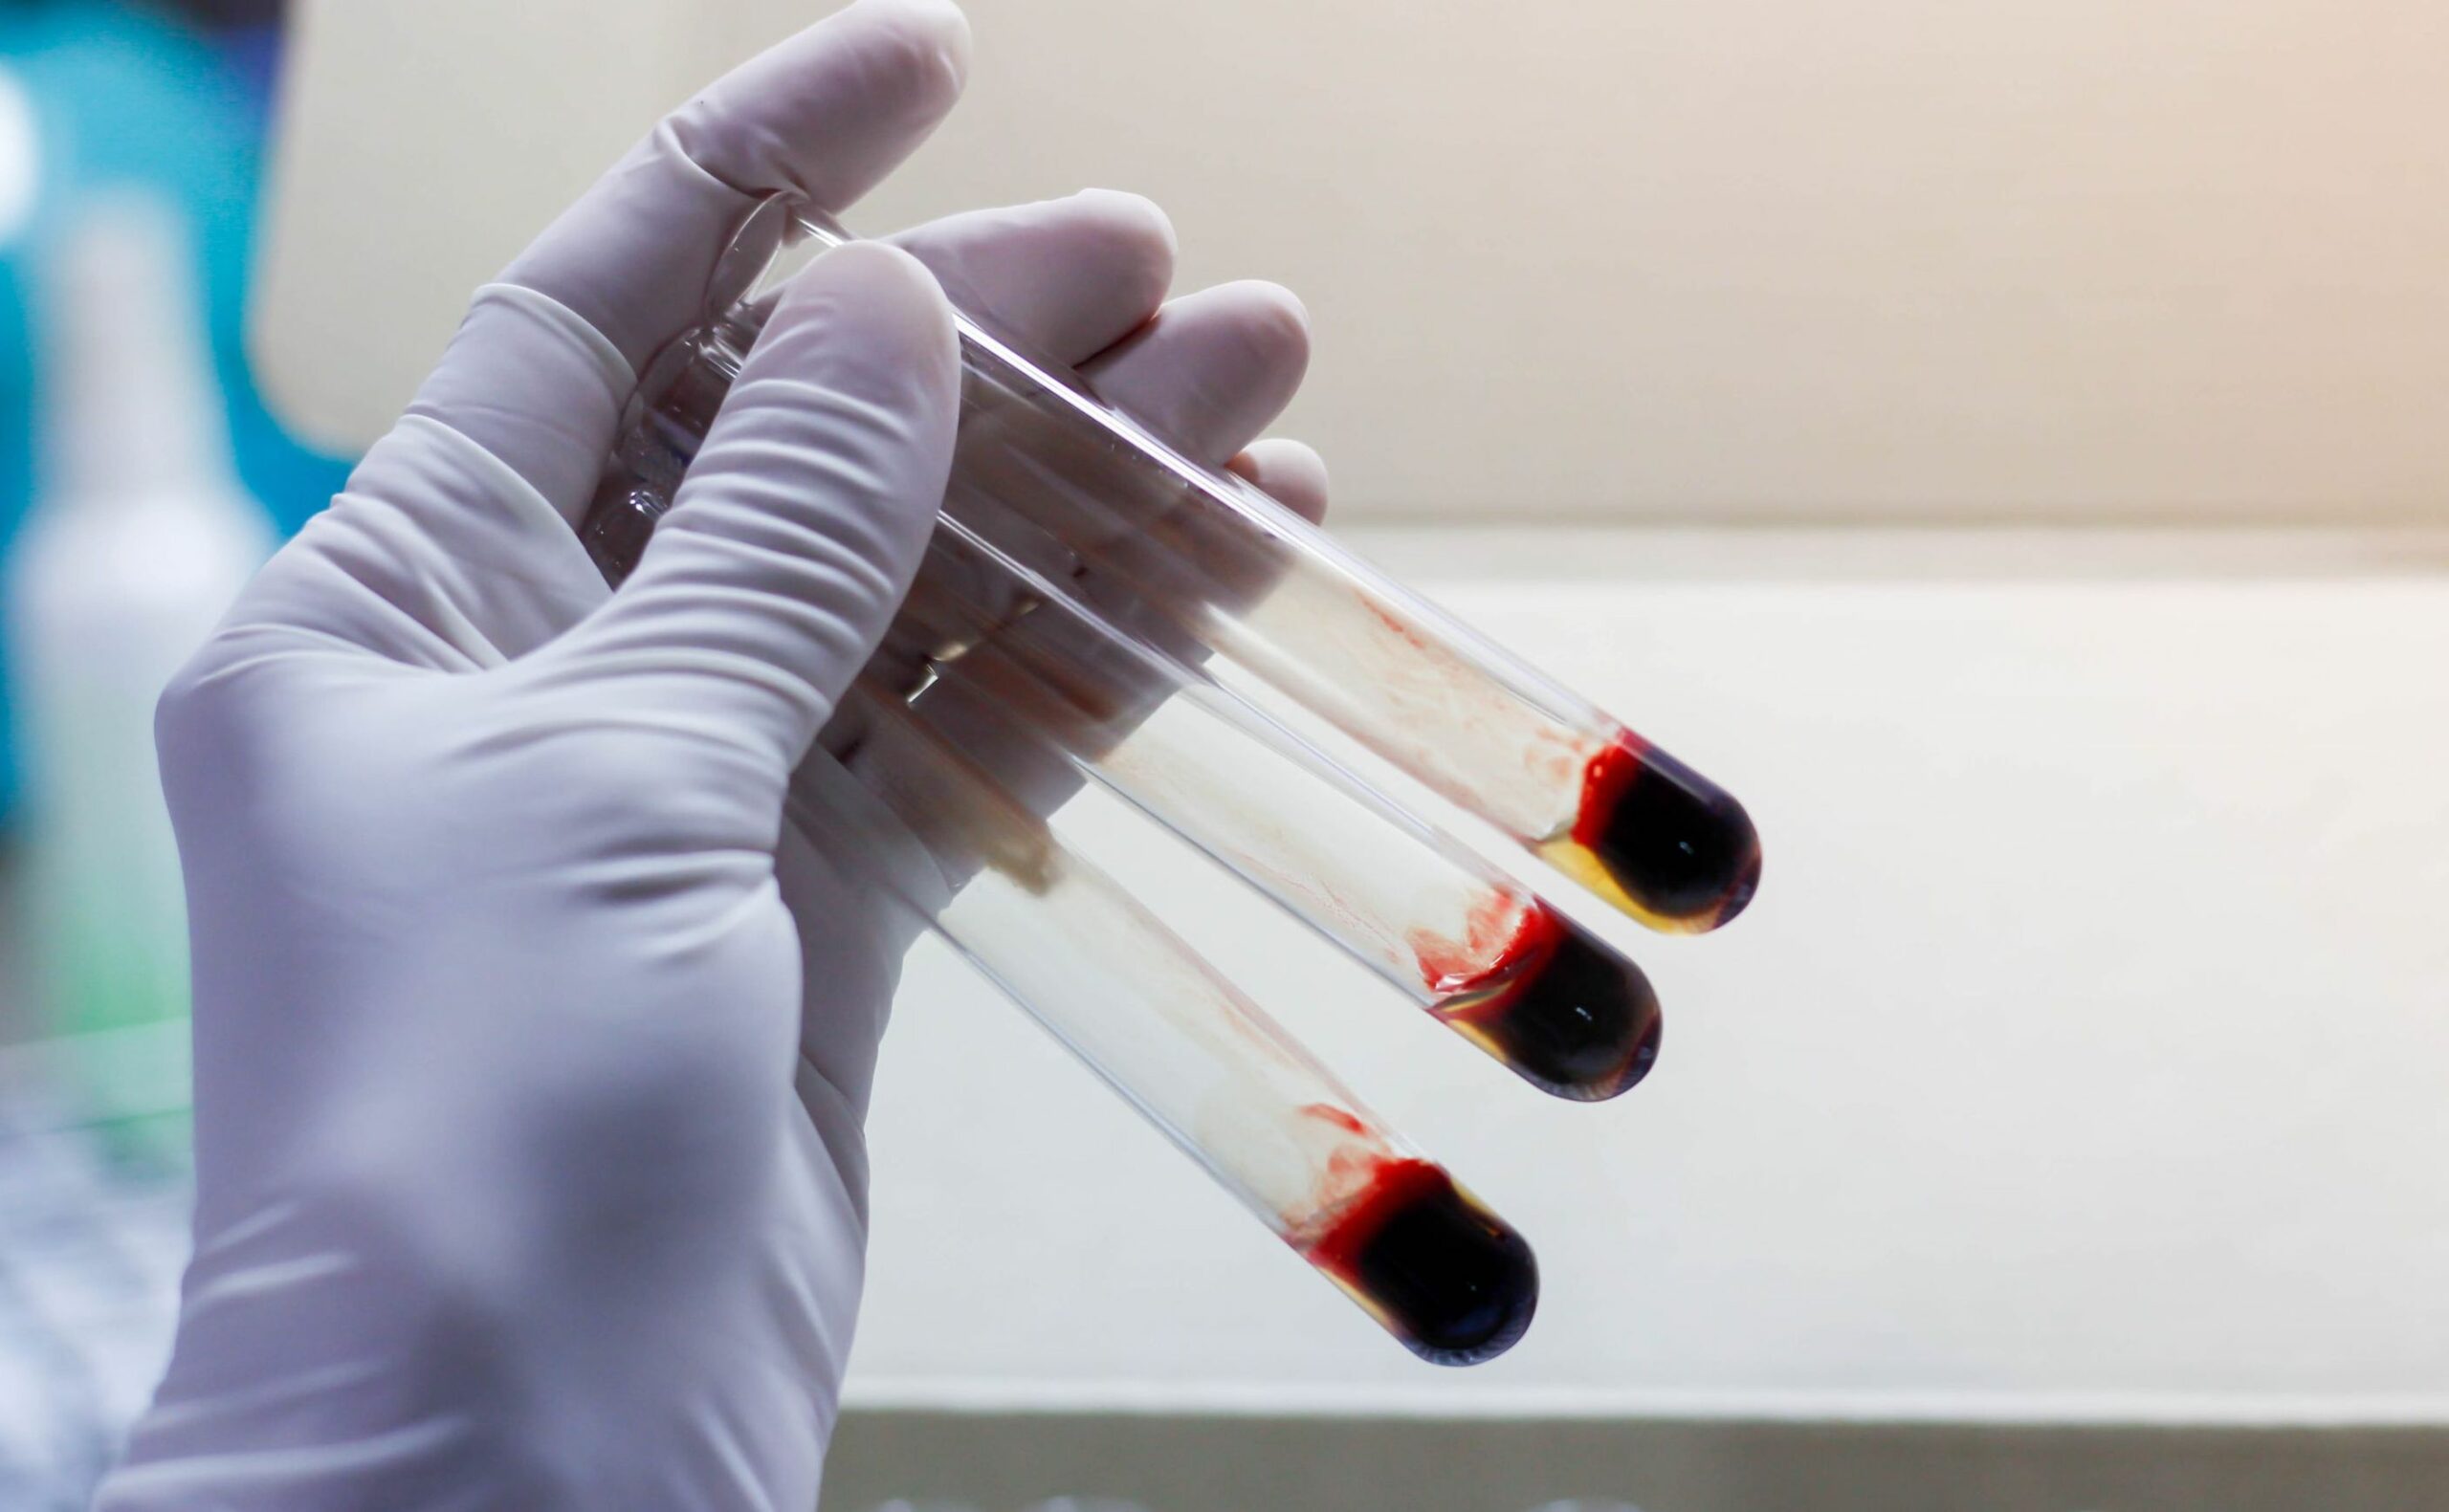 laboratorium krew badanie shutterstock scaled